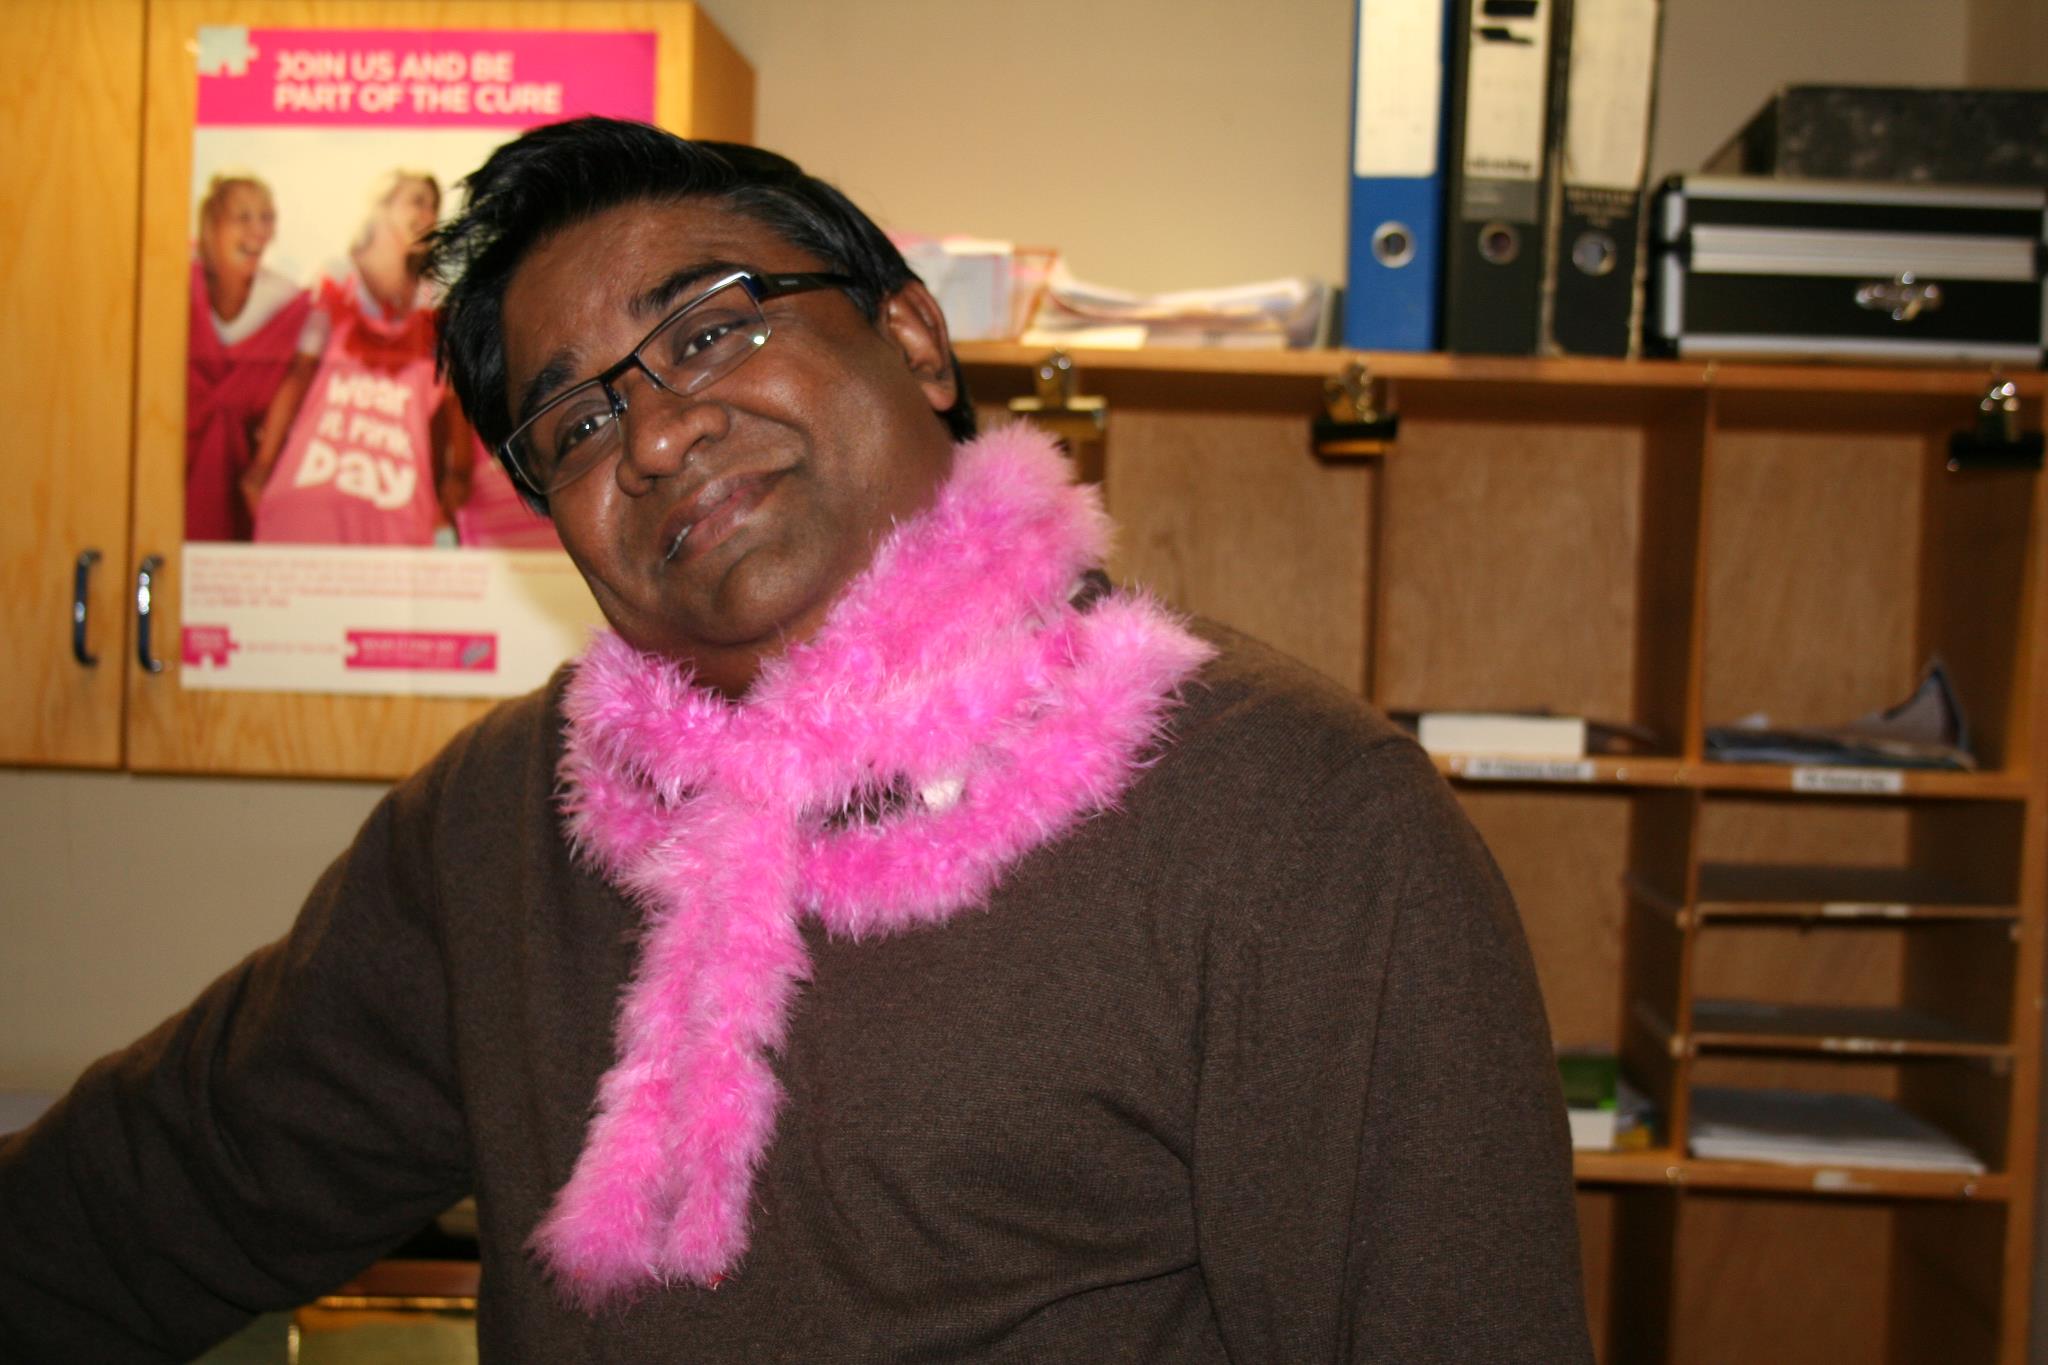 День борьбы против рака груди под девизом "Оденься в розовое!"